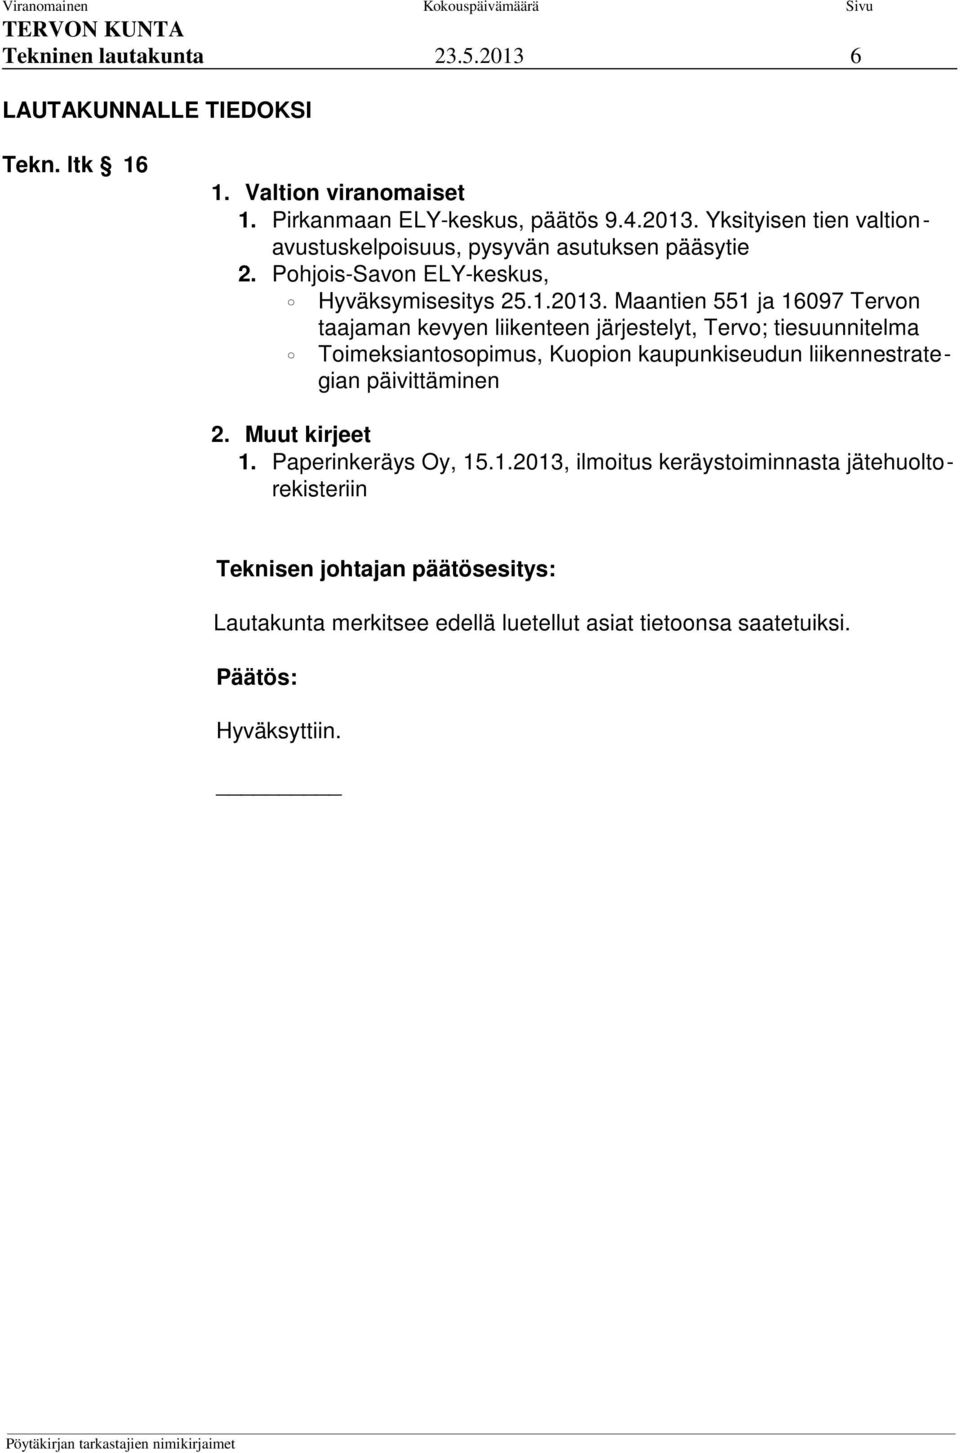 Maantien 551 ja 16097 Tervon taajaman kevyen liikenteen järjestelyt, Tervo; tiesuunnitelma Toimeksiantosopimus, Kuopion kaupunkiseudun